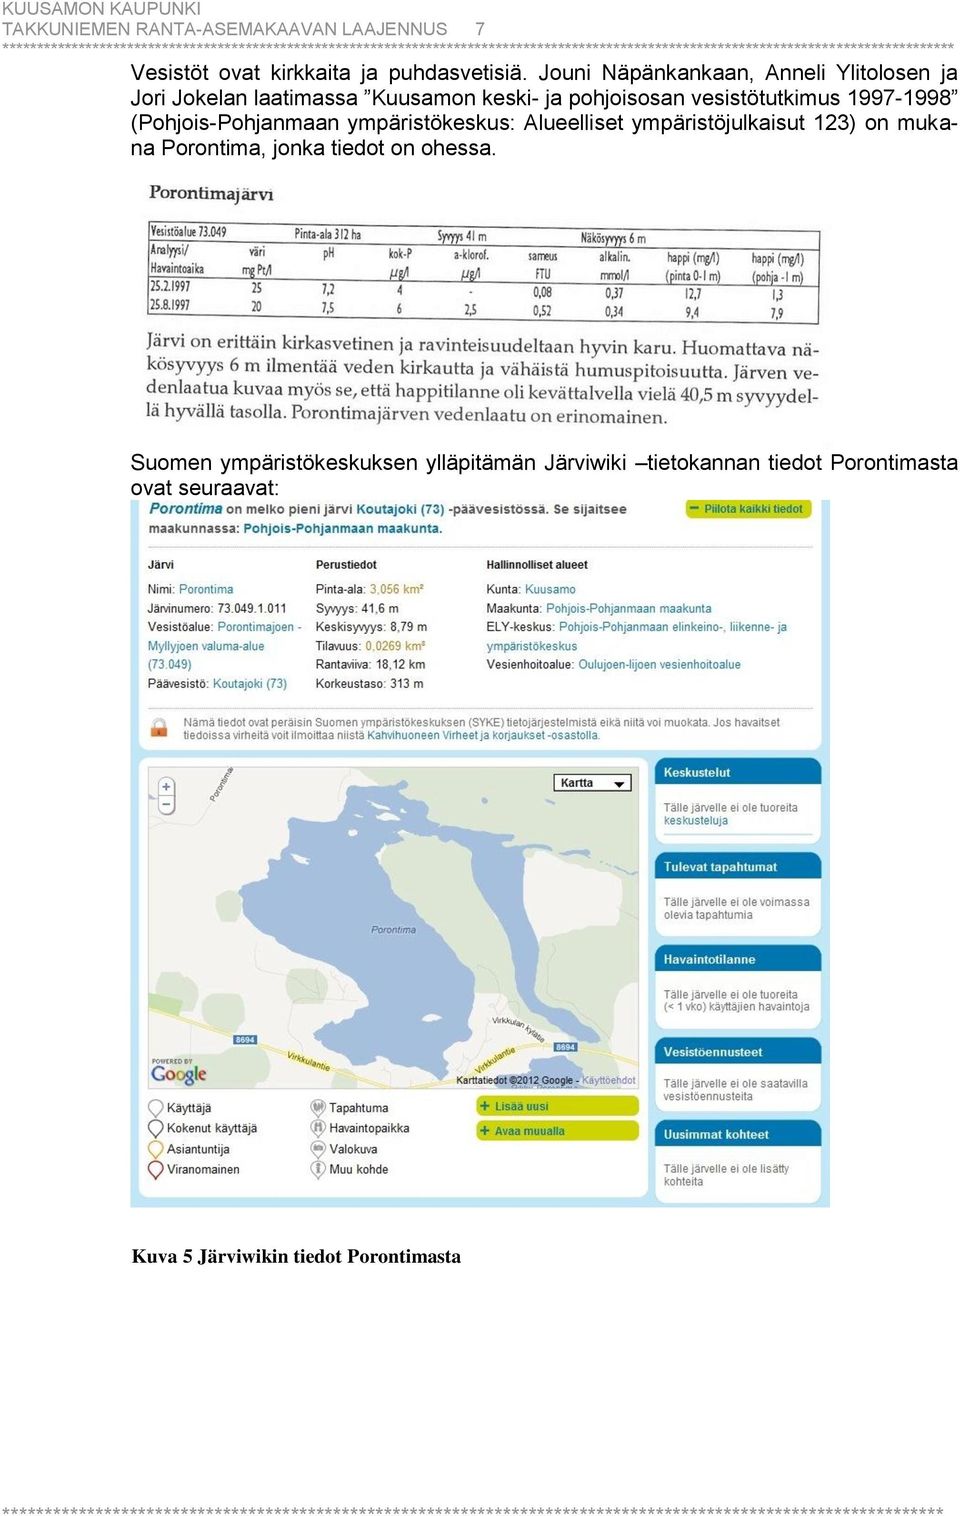 1997-1998 (Pohjois-Pohjanmaan ympäristökeskus: Alueelliset ympäristöjulkaisut 123) on mukana Porontima, jonka tiedot on